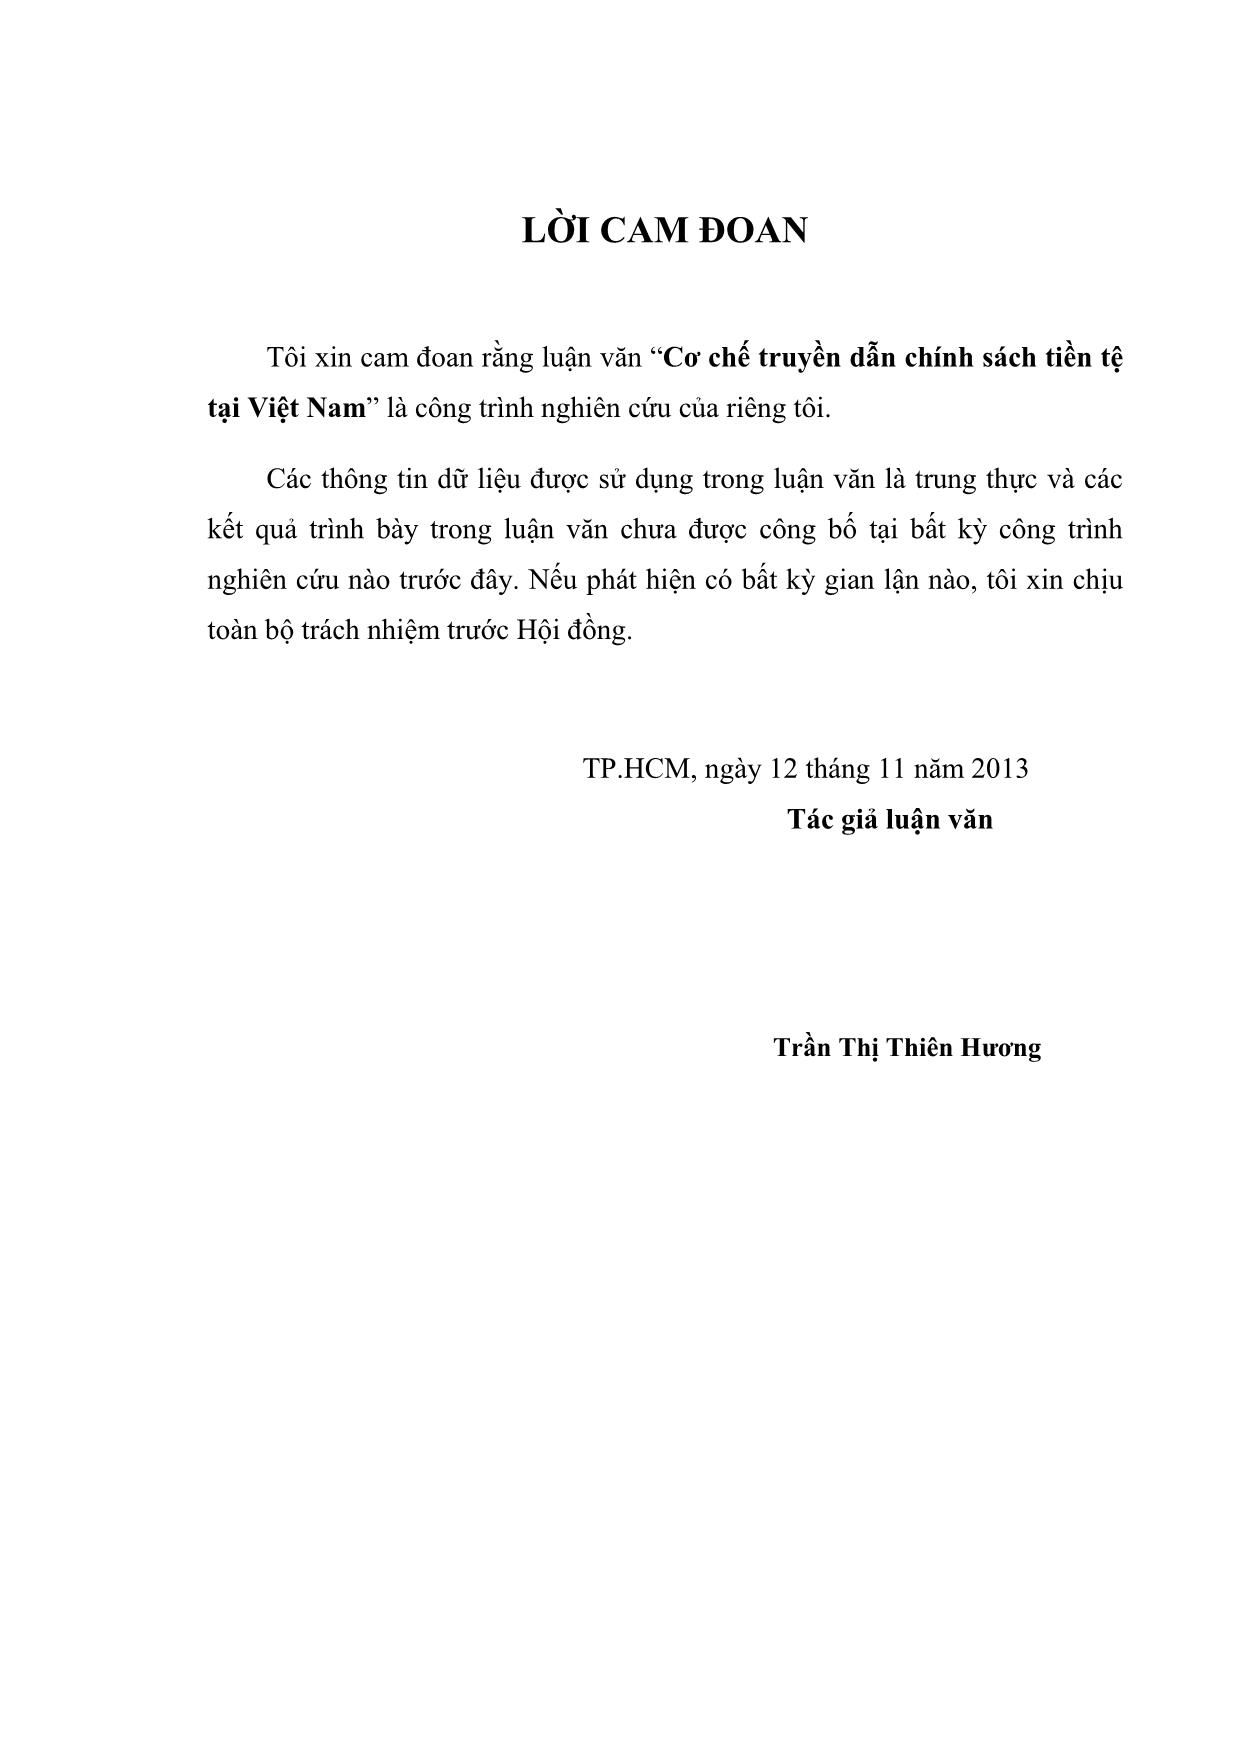 Cơ chế truyền dẫn chính sách tiền tệ tại Việt Nam trang 3